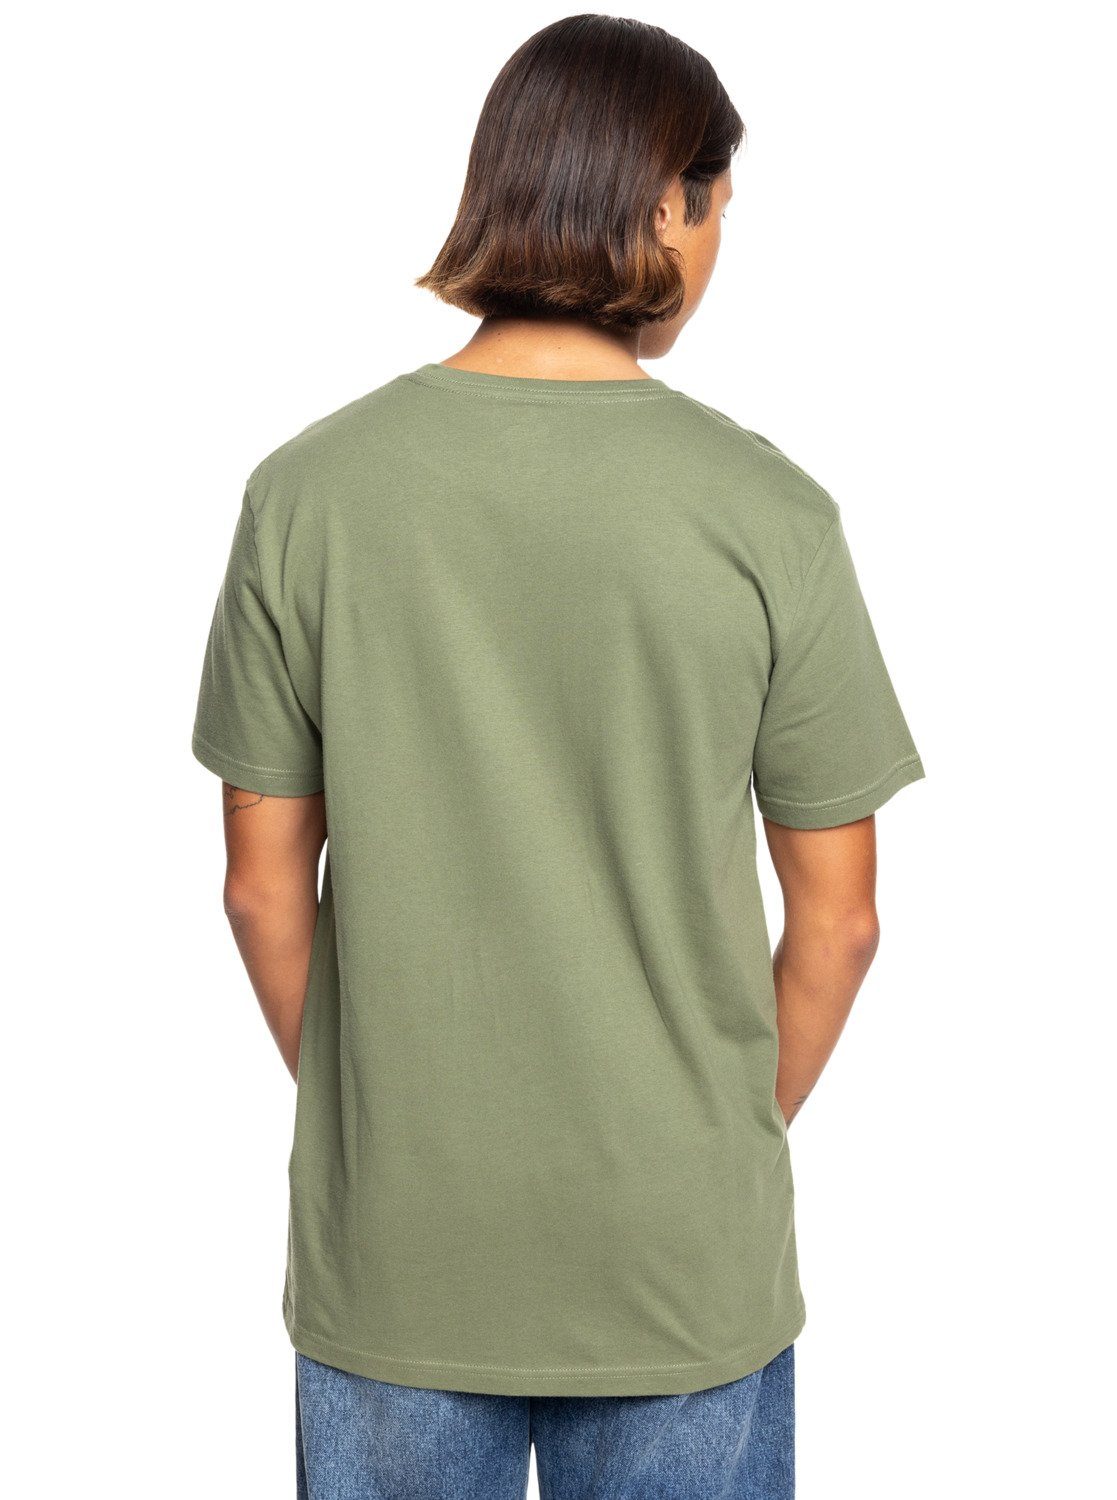 Leaf Trim Circle Quiksilver T-Shirt Four Clover